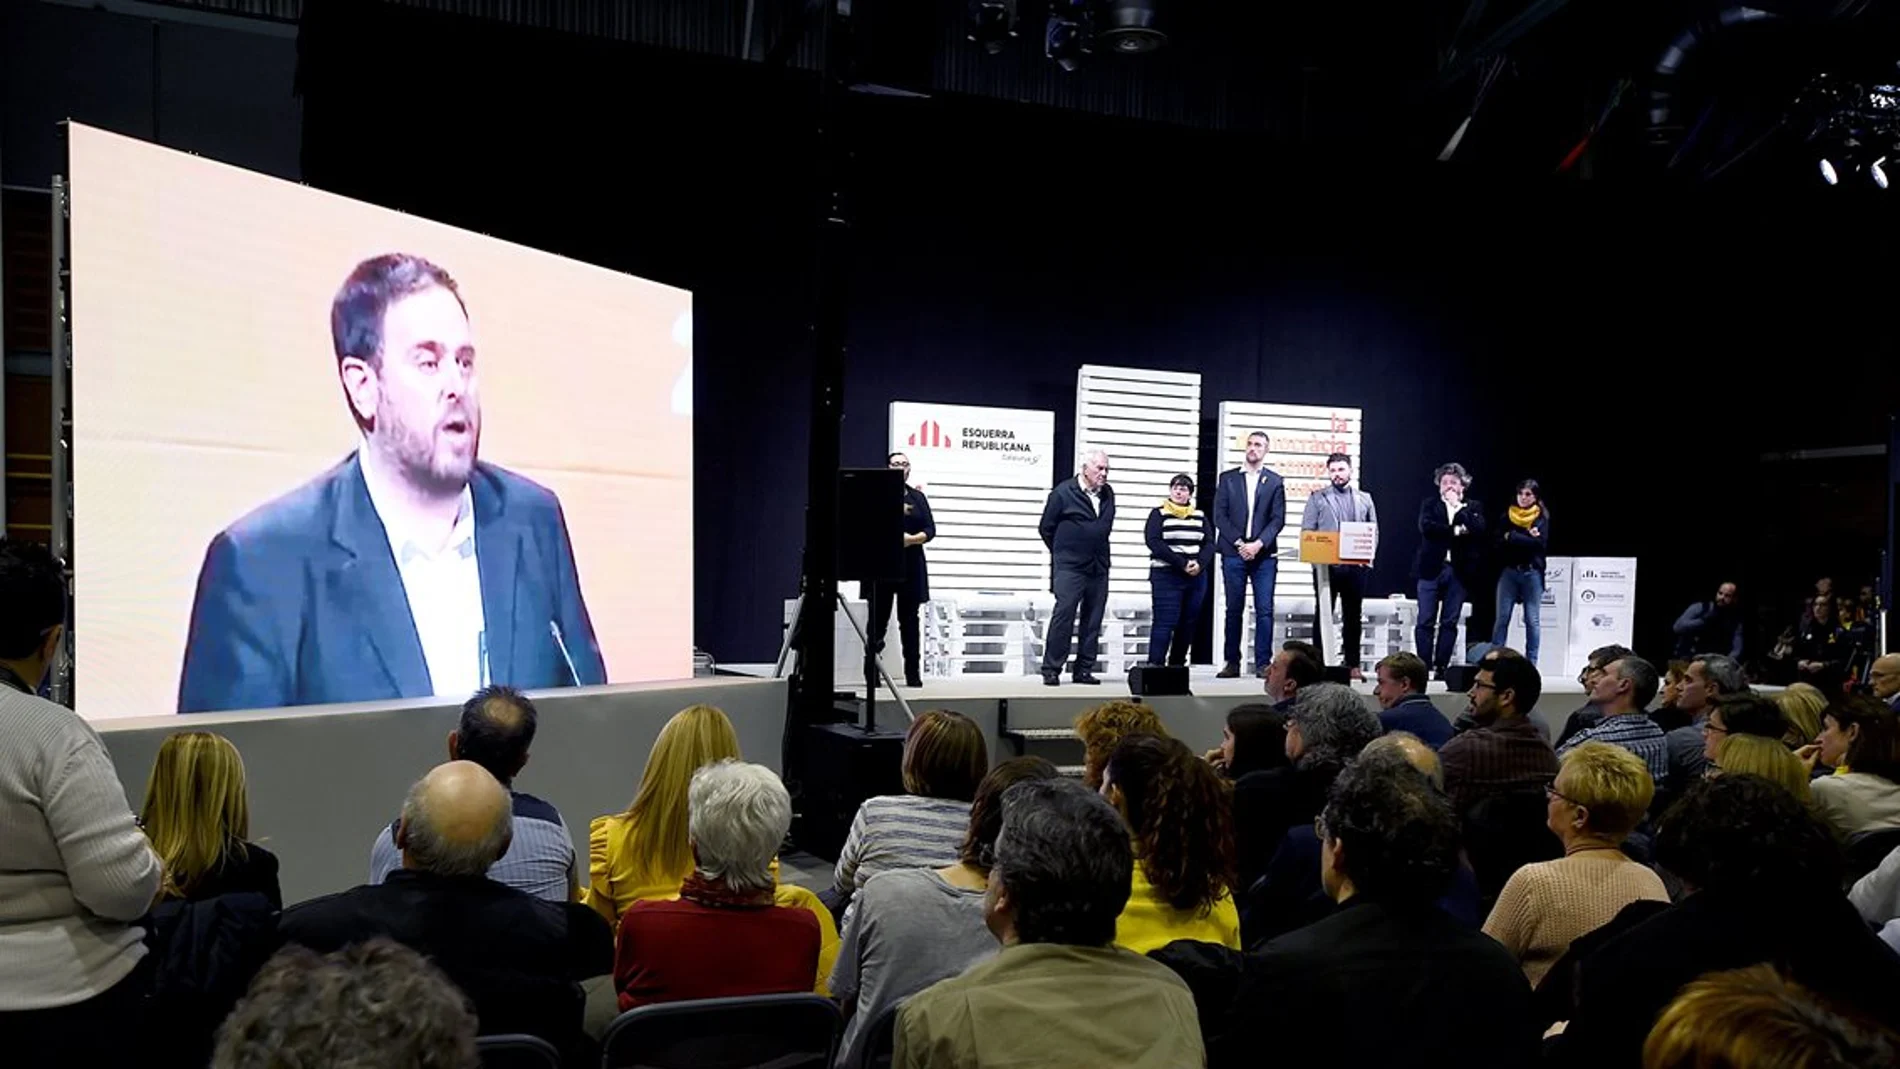 Proyección de un mensaje de Oriol Junqueras durante un acto electoral de ERC